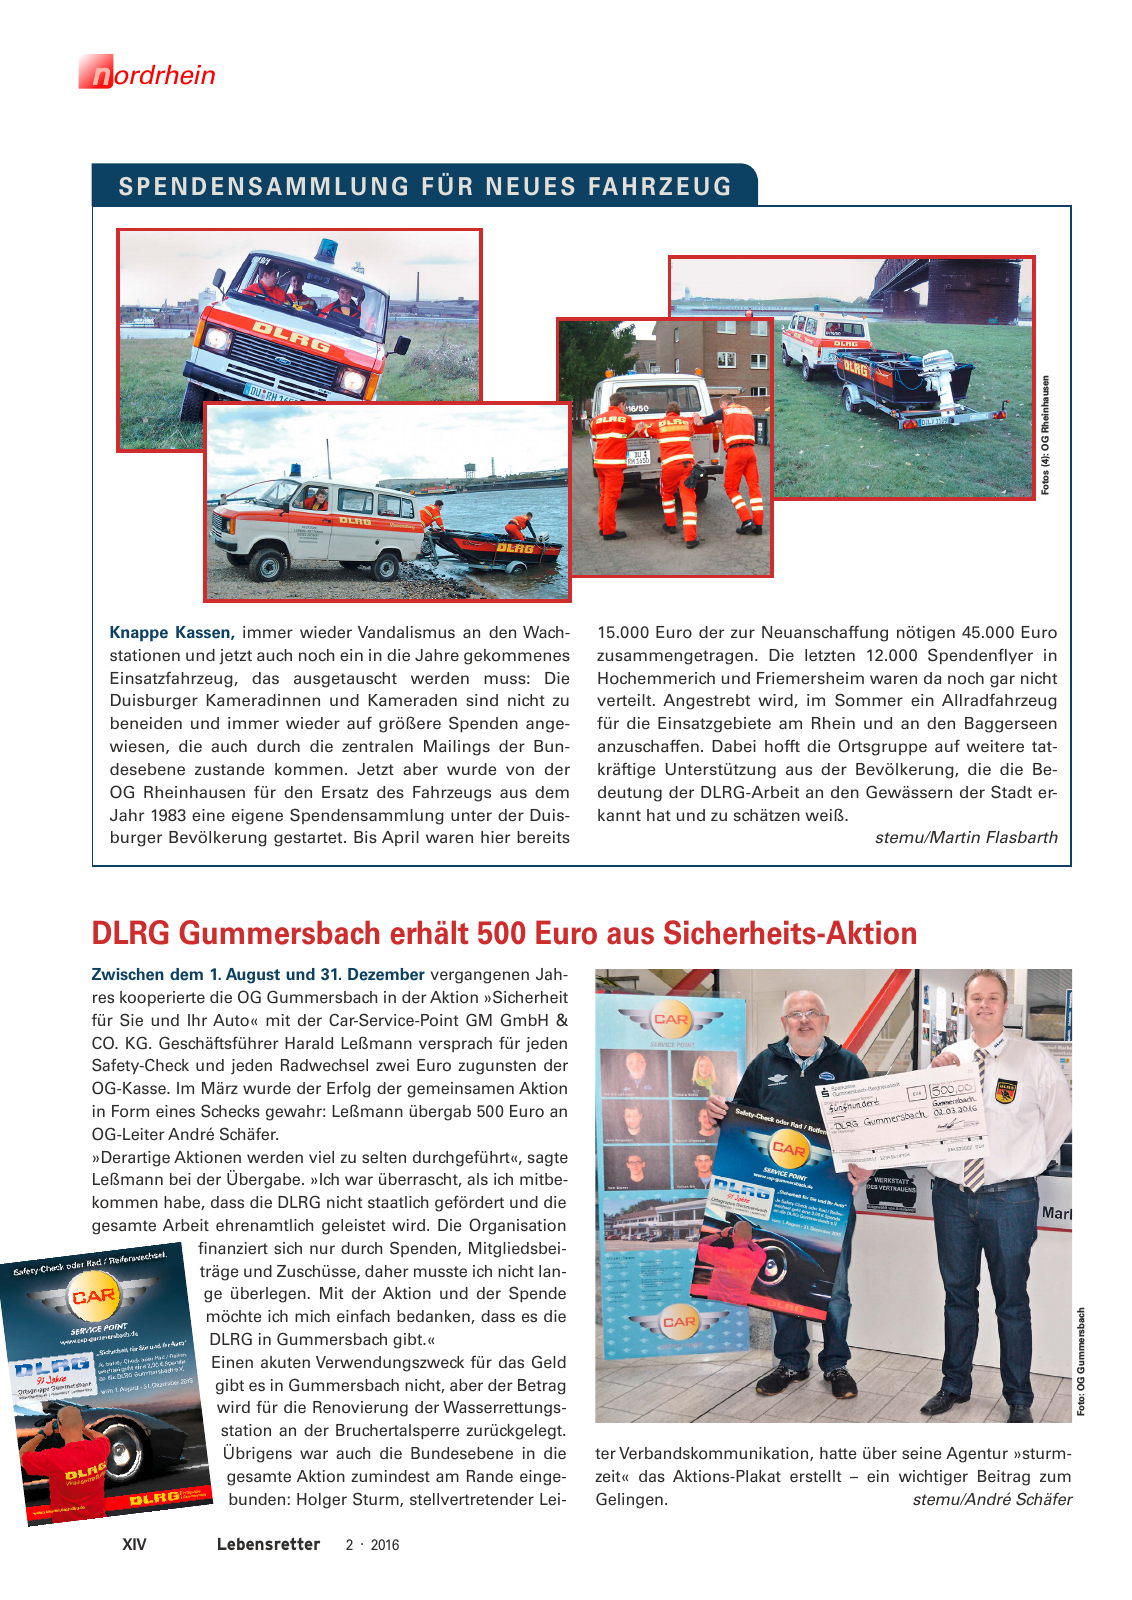 Vorschau Lebensretter 2/2016 - Regionalausgabe Nordrhein Seite 16